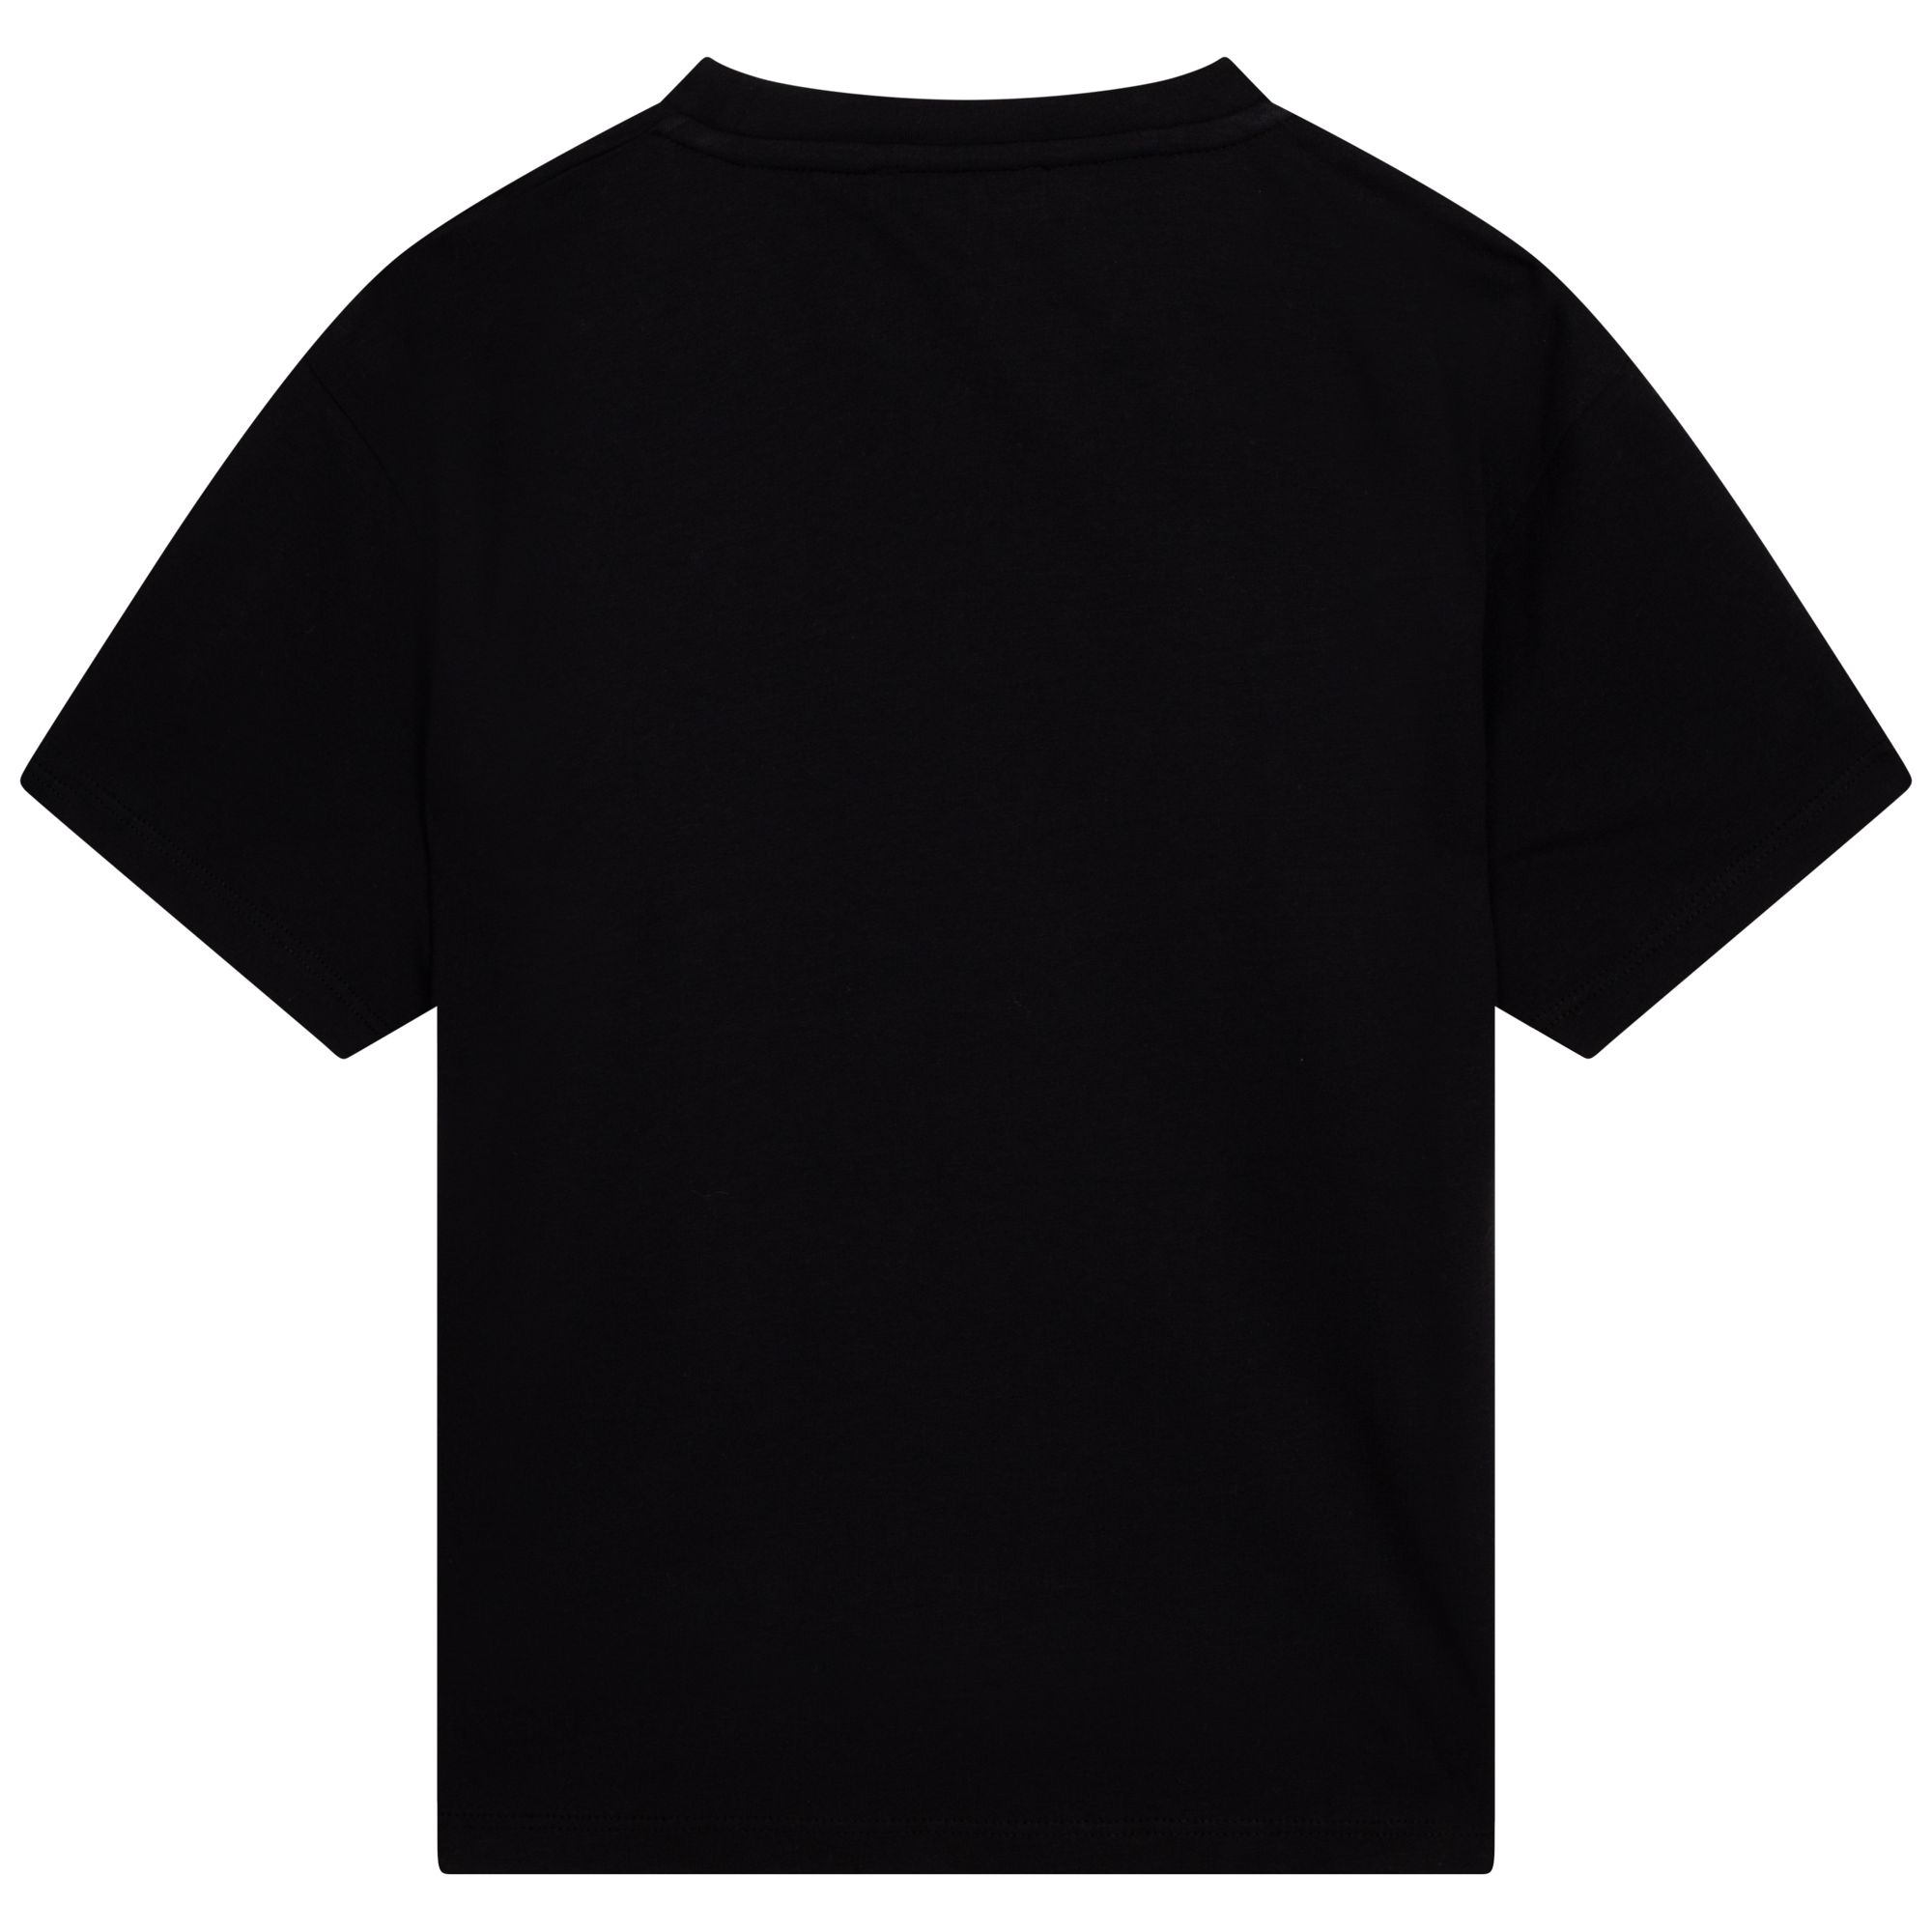 T-shirt met print DKNY Voor